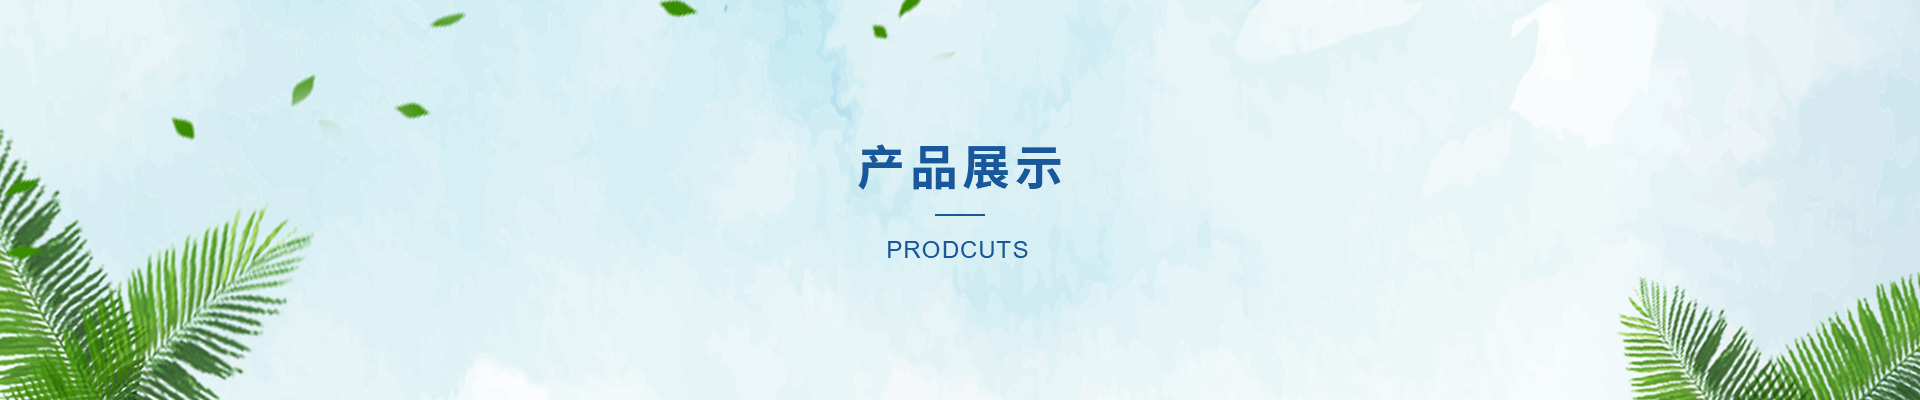 贝博app体育下载安装:2016年4月中国合成短纤与棉混纺机织物进口量统计表